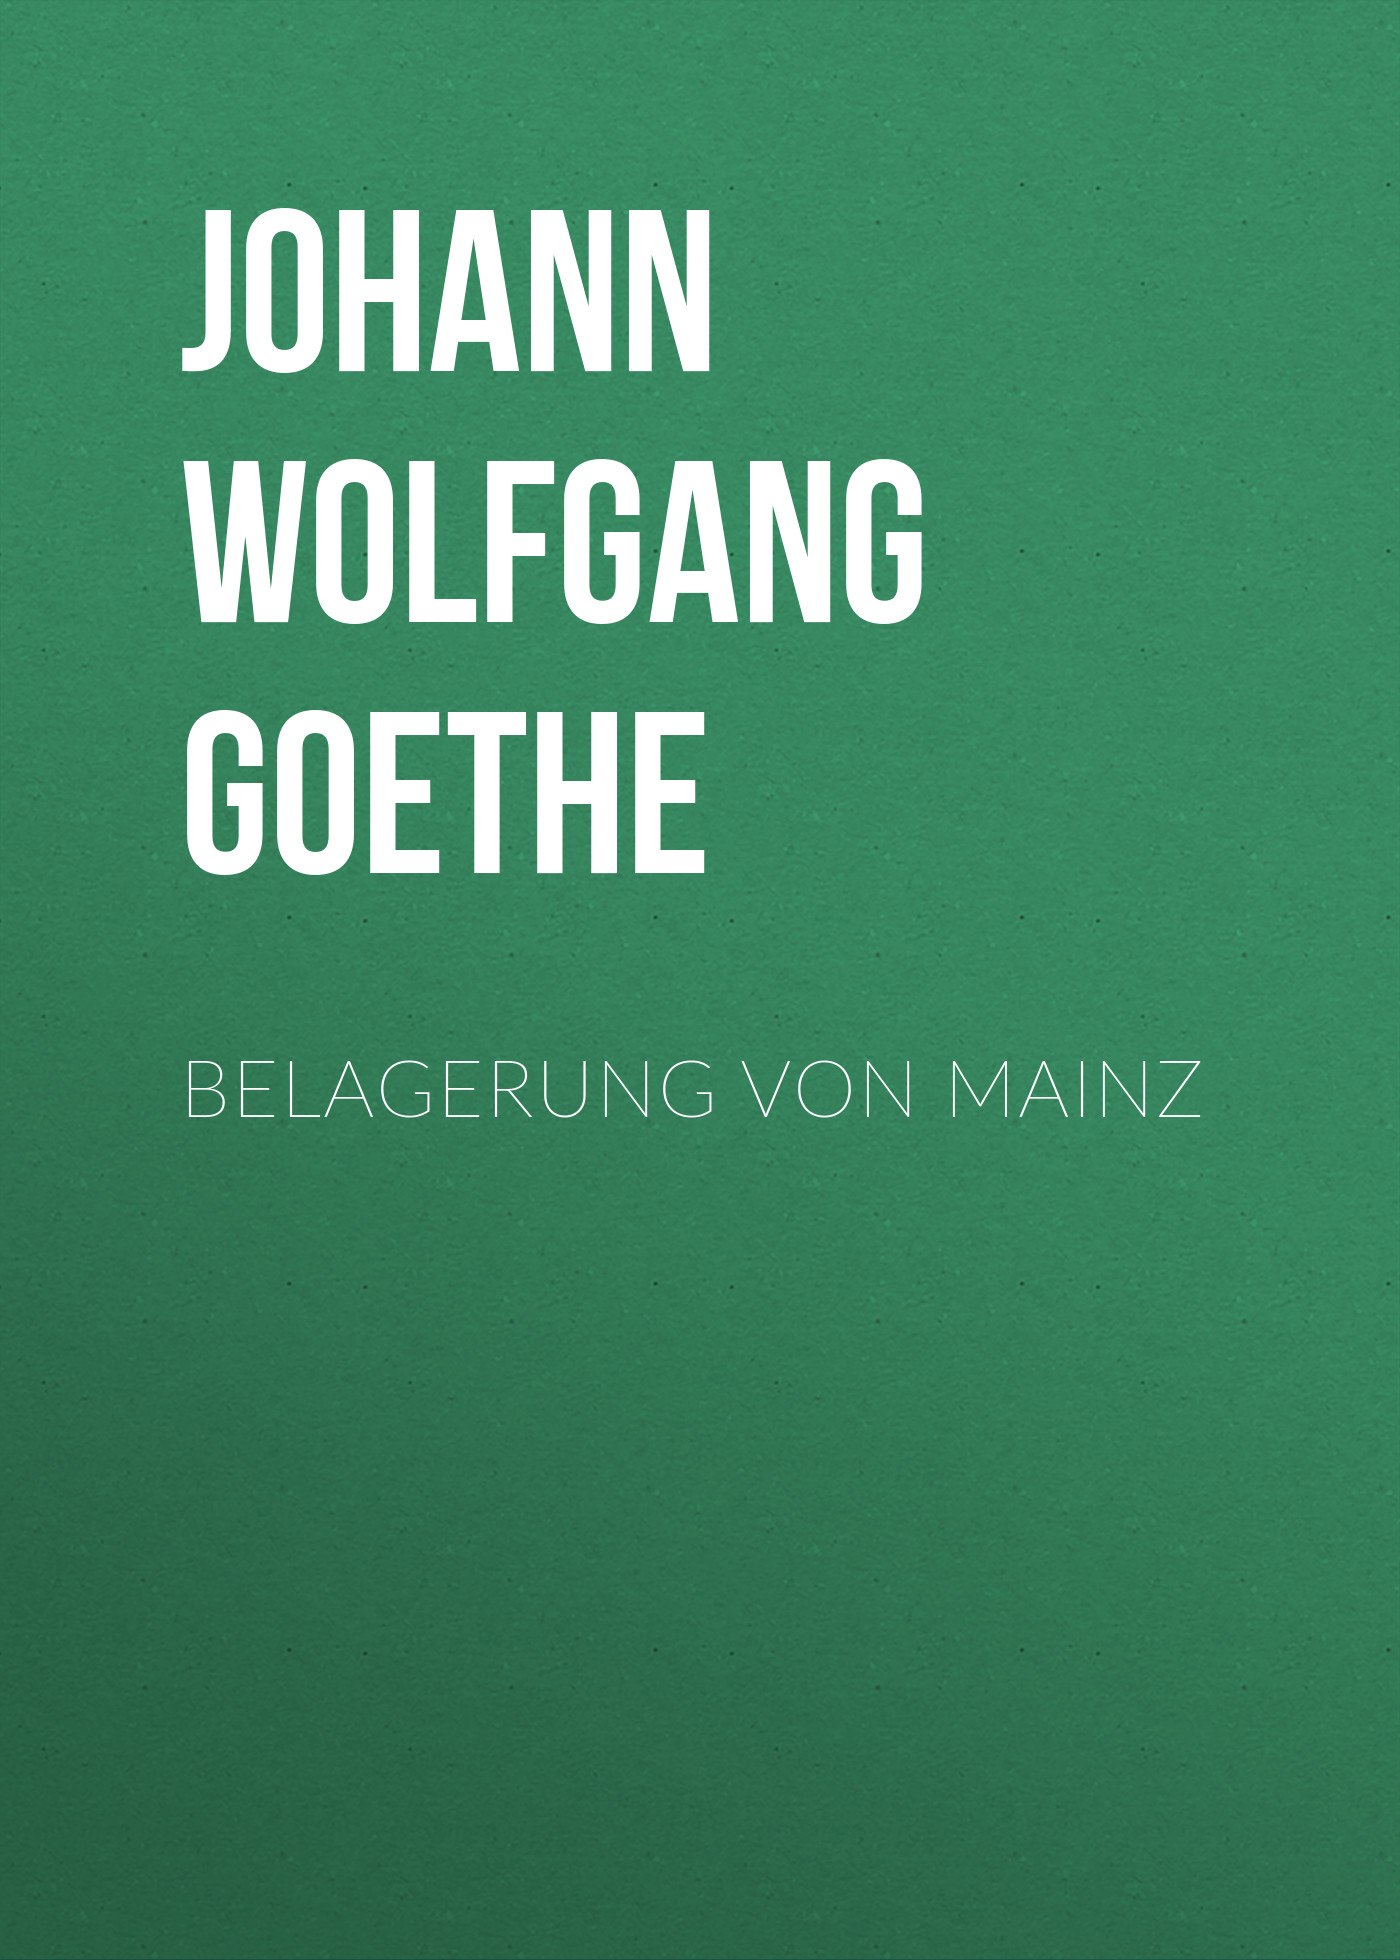 Книга Belagerung von Mainz из серии , созданная Johann von Goethe, может относится к жанру Зарубежная старинная литература, Зарубежная классика. Стоимость электронной книги Belagerung von Mainz с идентификатором 25203207 составляет 0 руб.